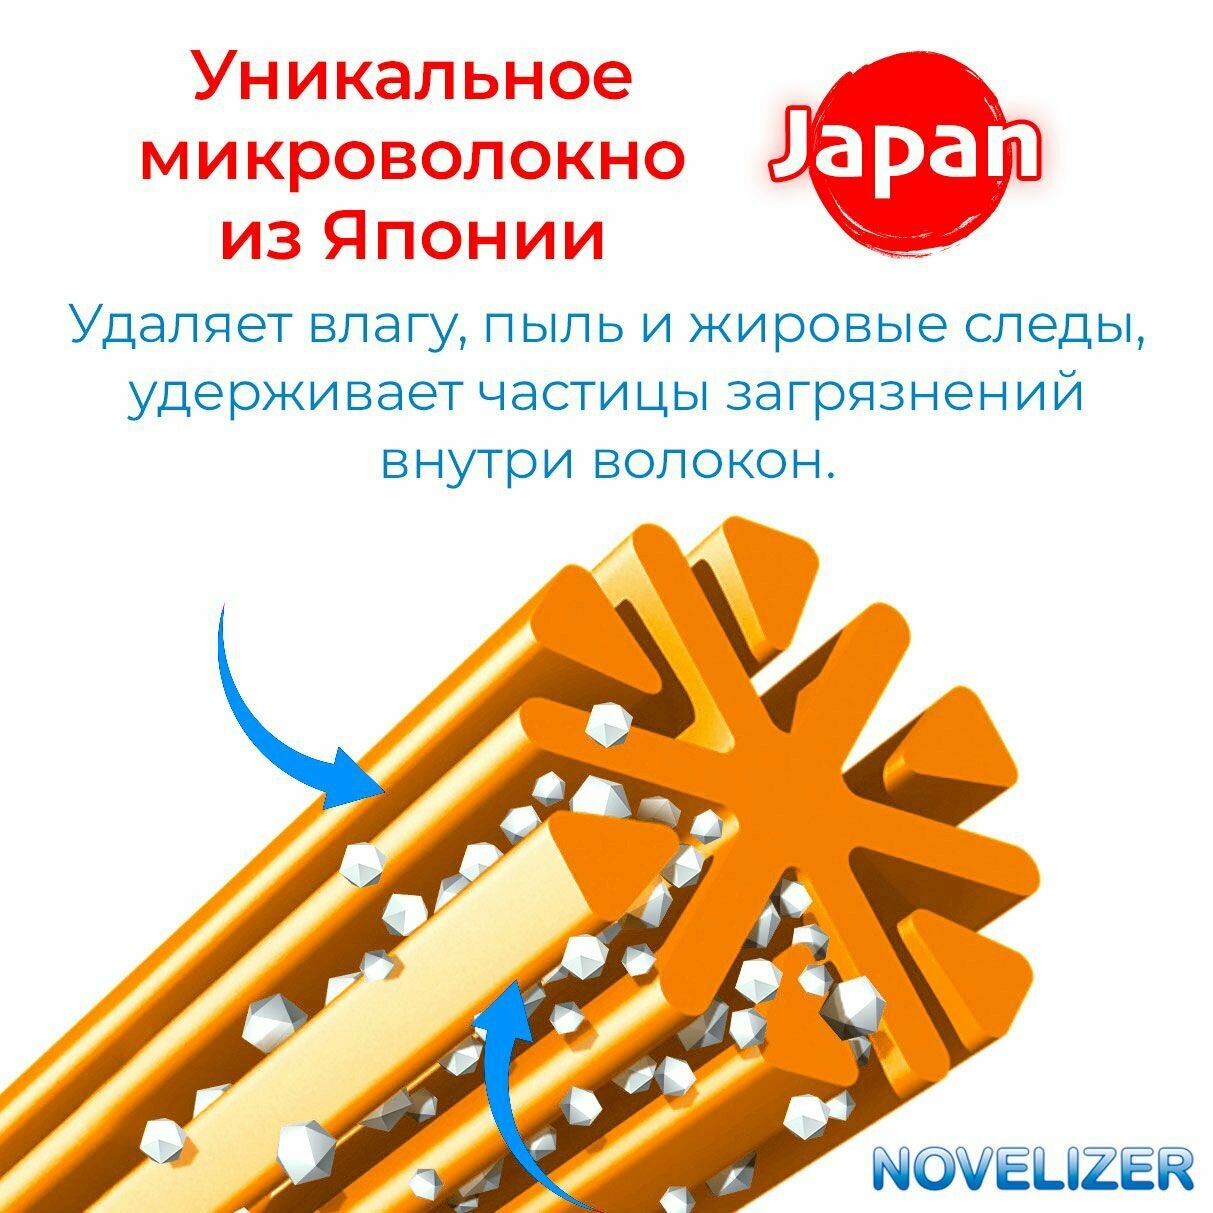 Японская салфетка Novelizer из микроволокна для очистки очков для зрения, солнцезащитных и поляризационных, линз, оптики, салфетка из микрофибры многоразовая